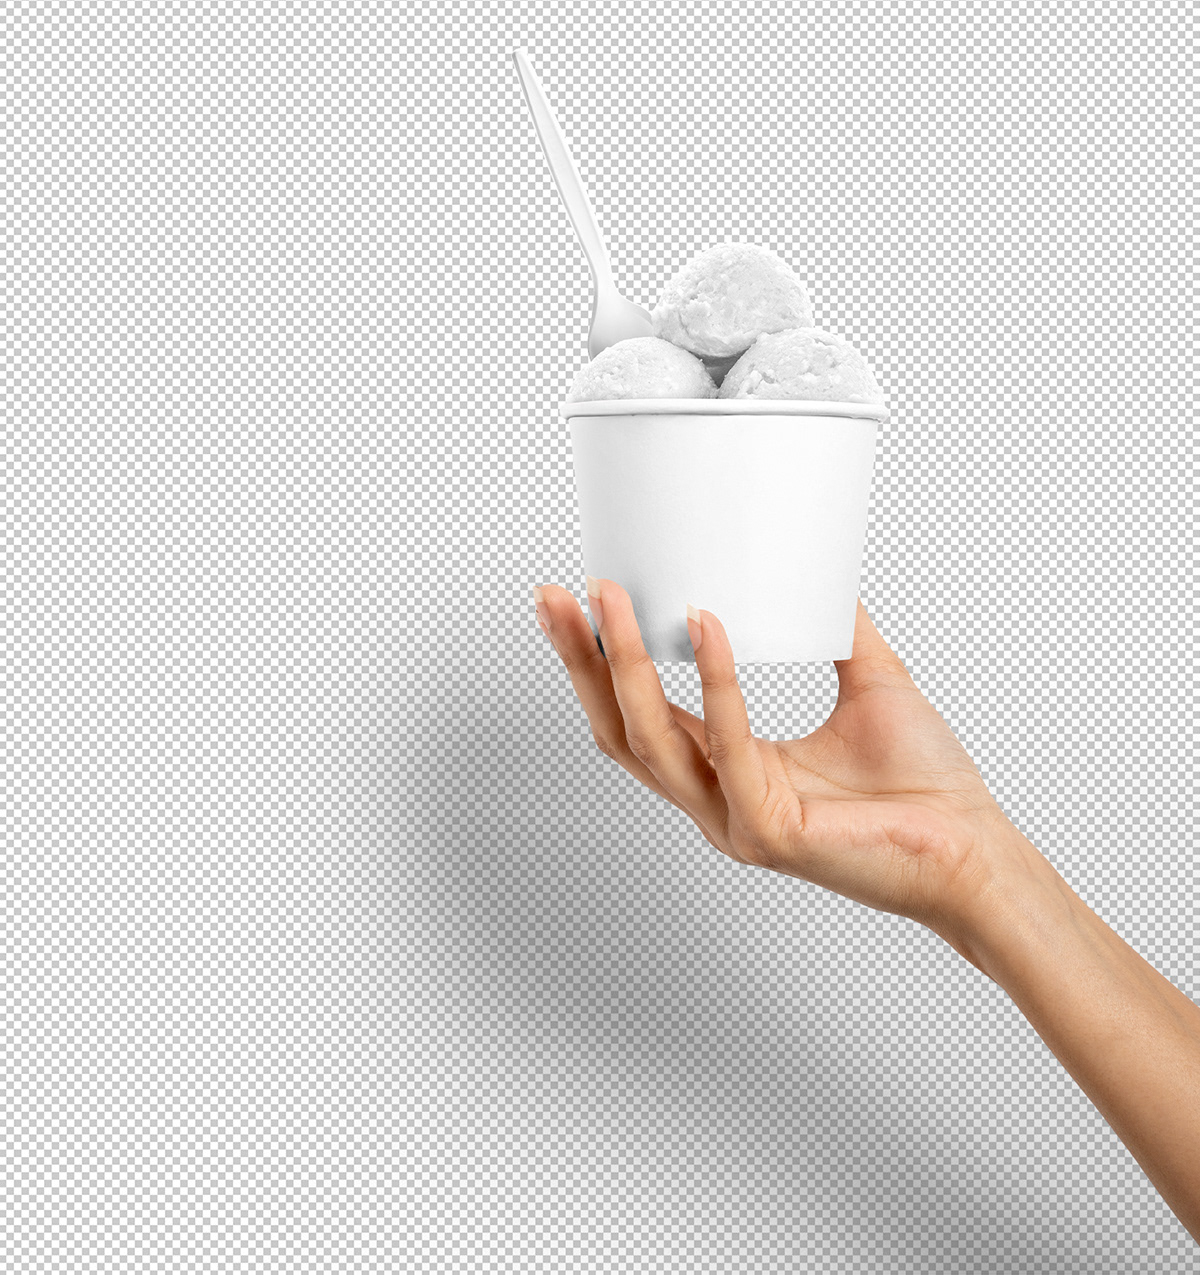 branding cup free freebie ice cream ice cream cup Mockup Packaging scoop yo...